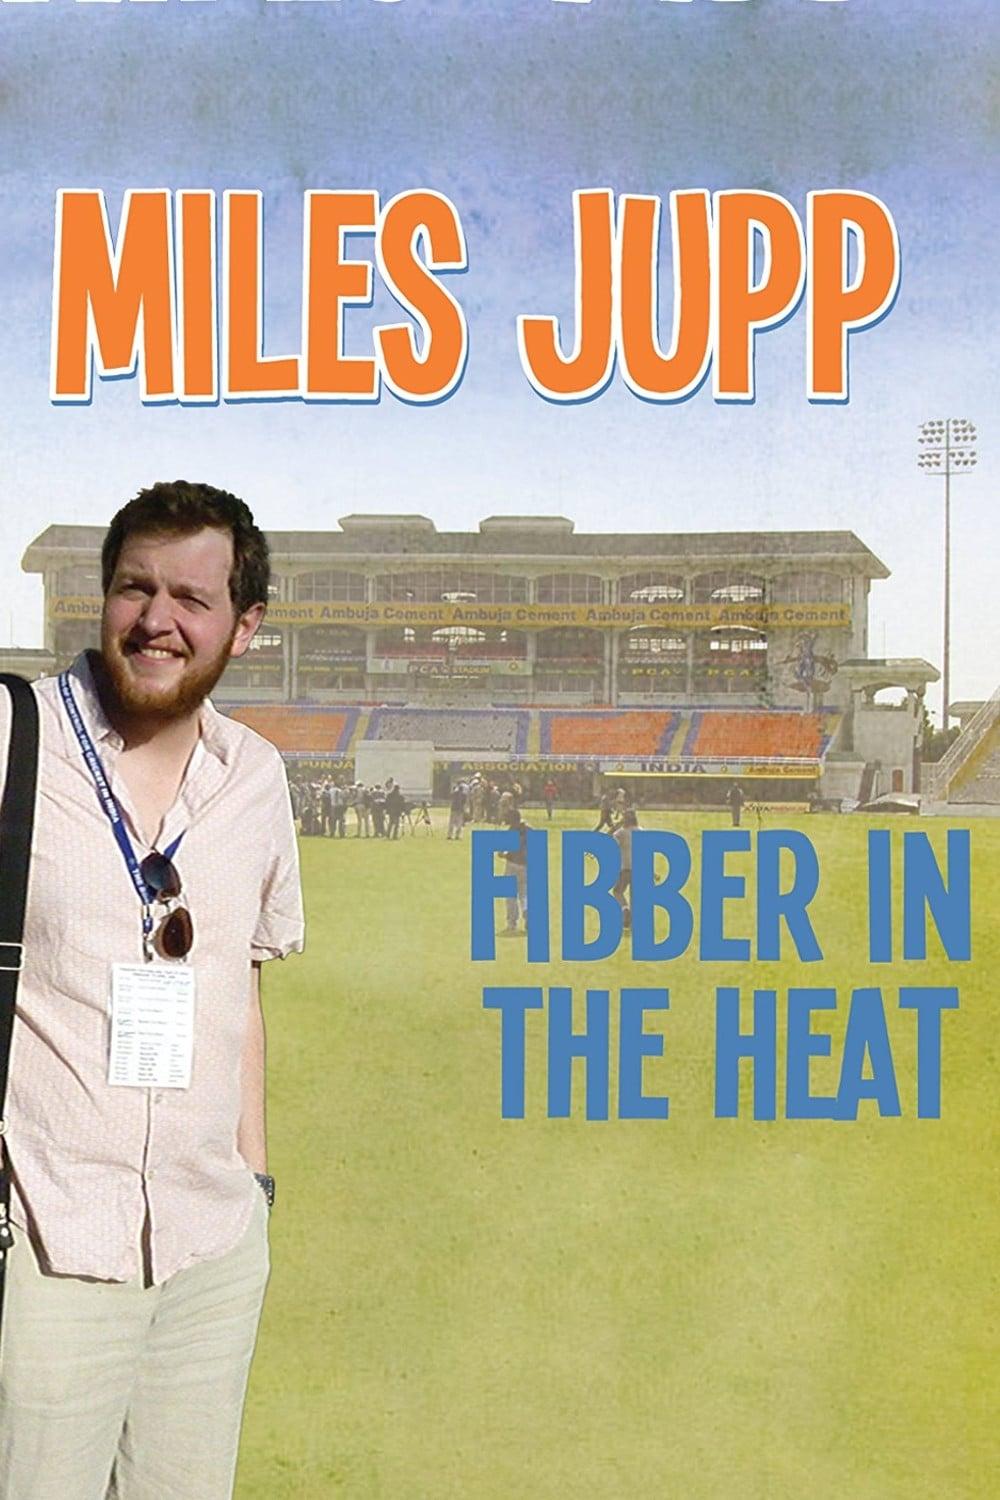 Miles Jupp: Fibber in the Heat poster